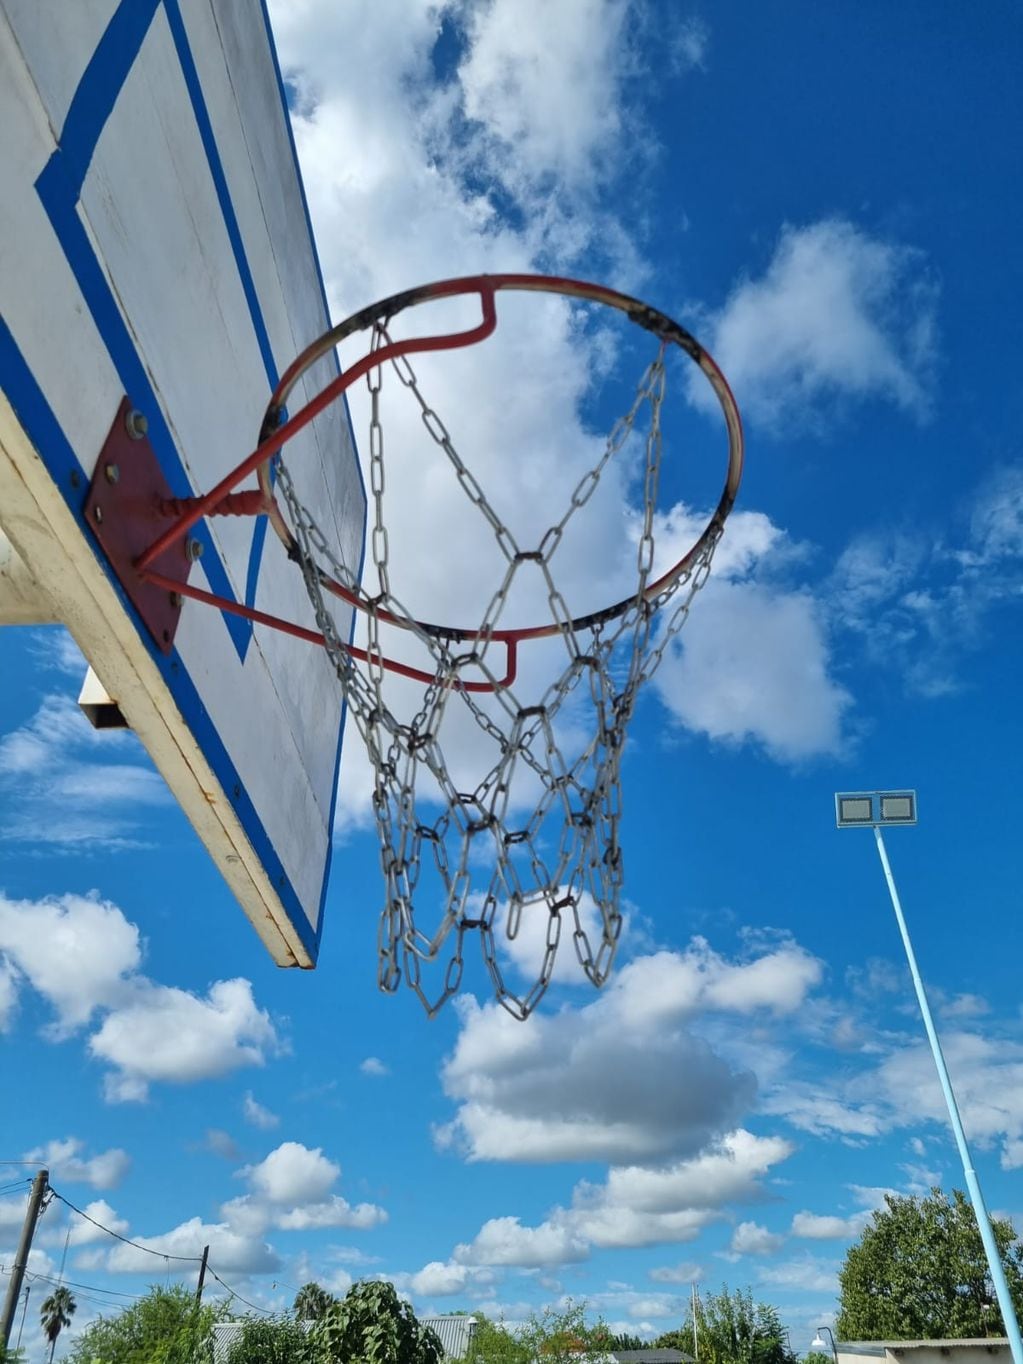 Aros de basquet con cadenas.